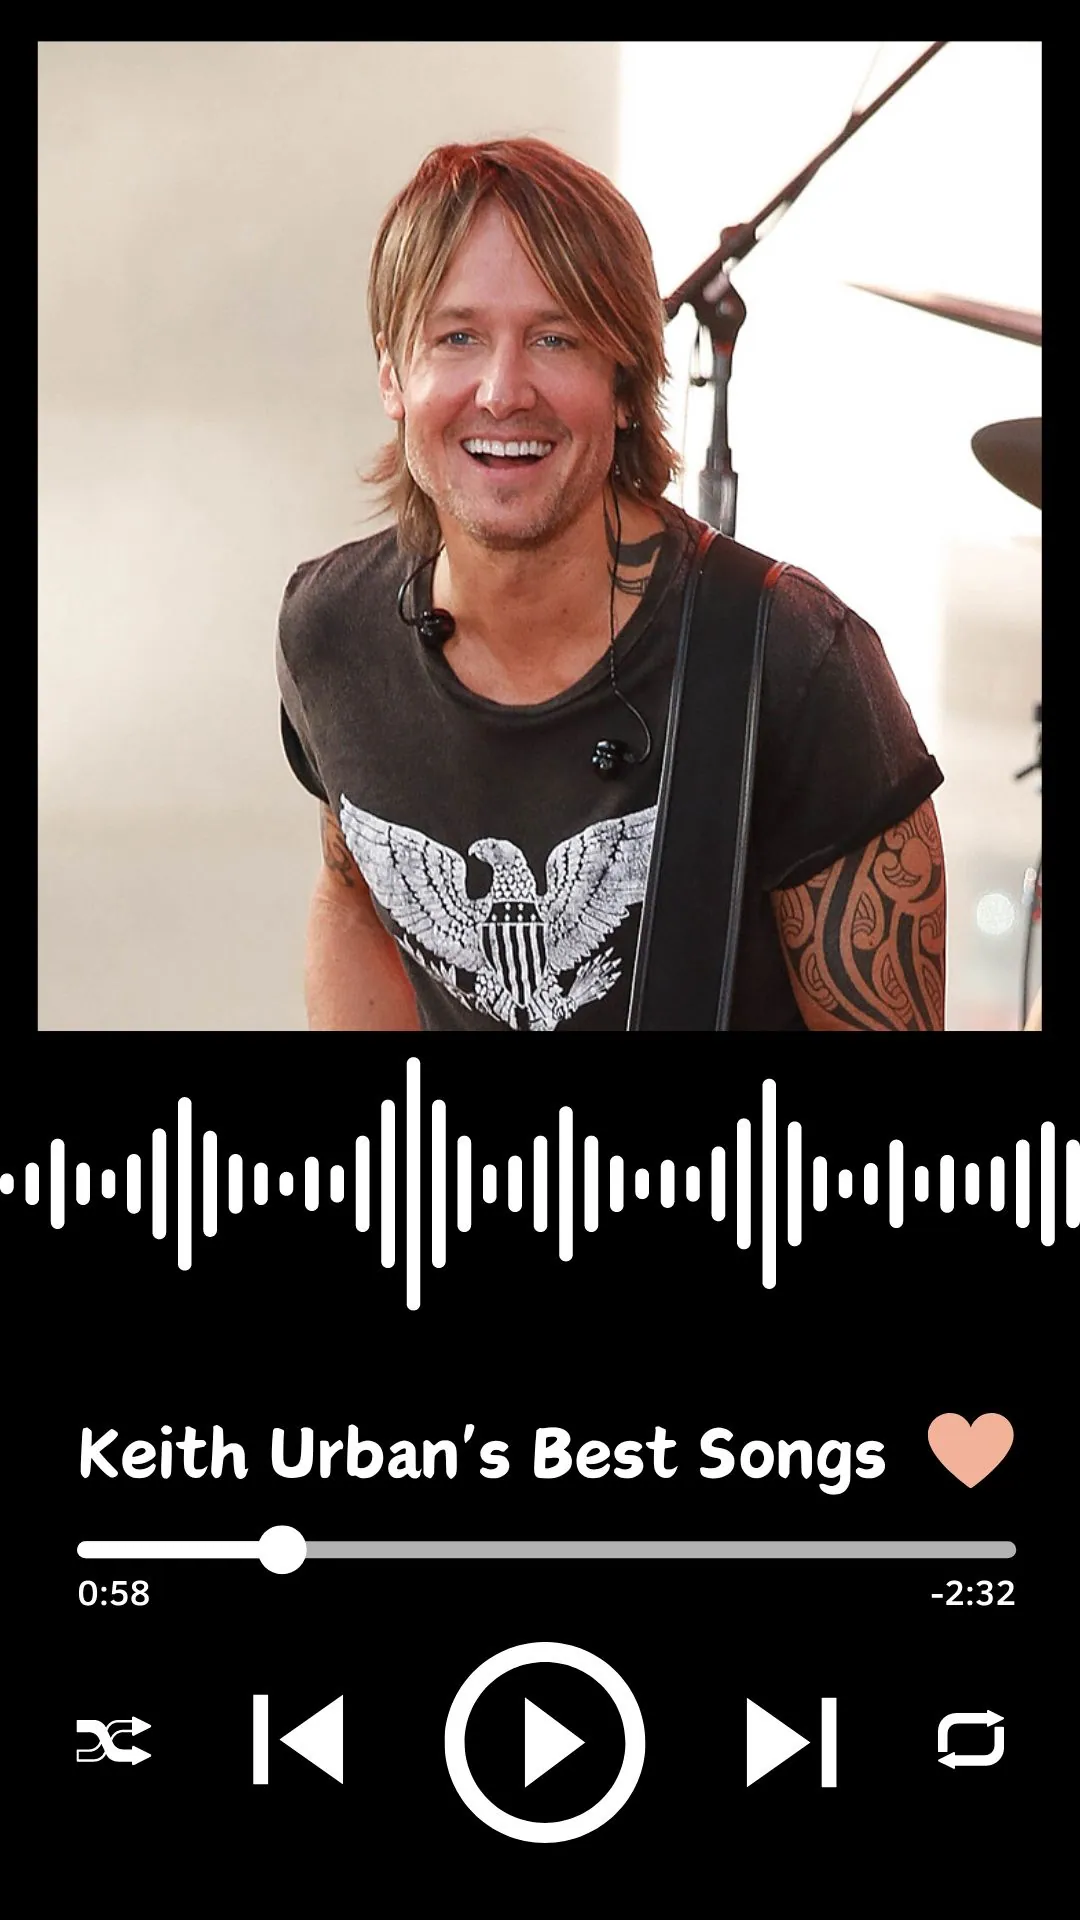 Keith Urban's Best Songs